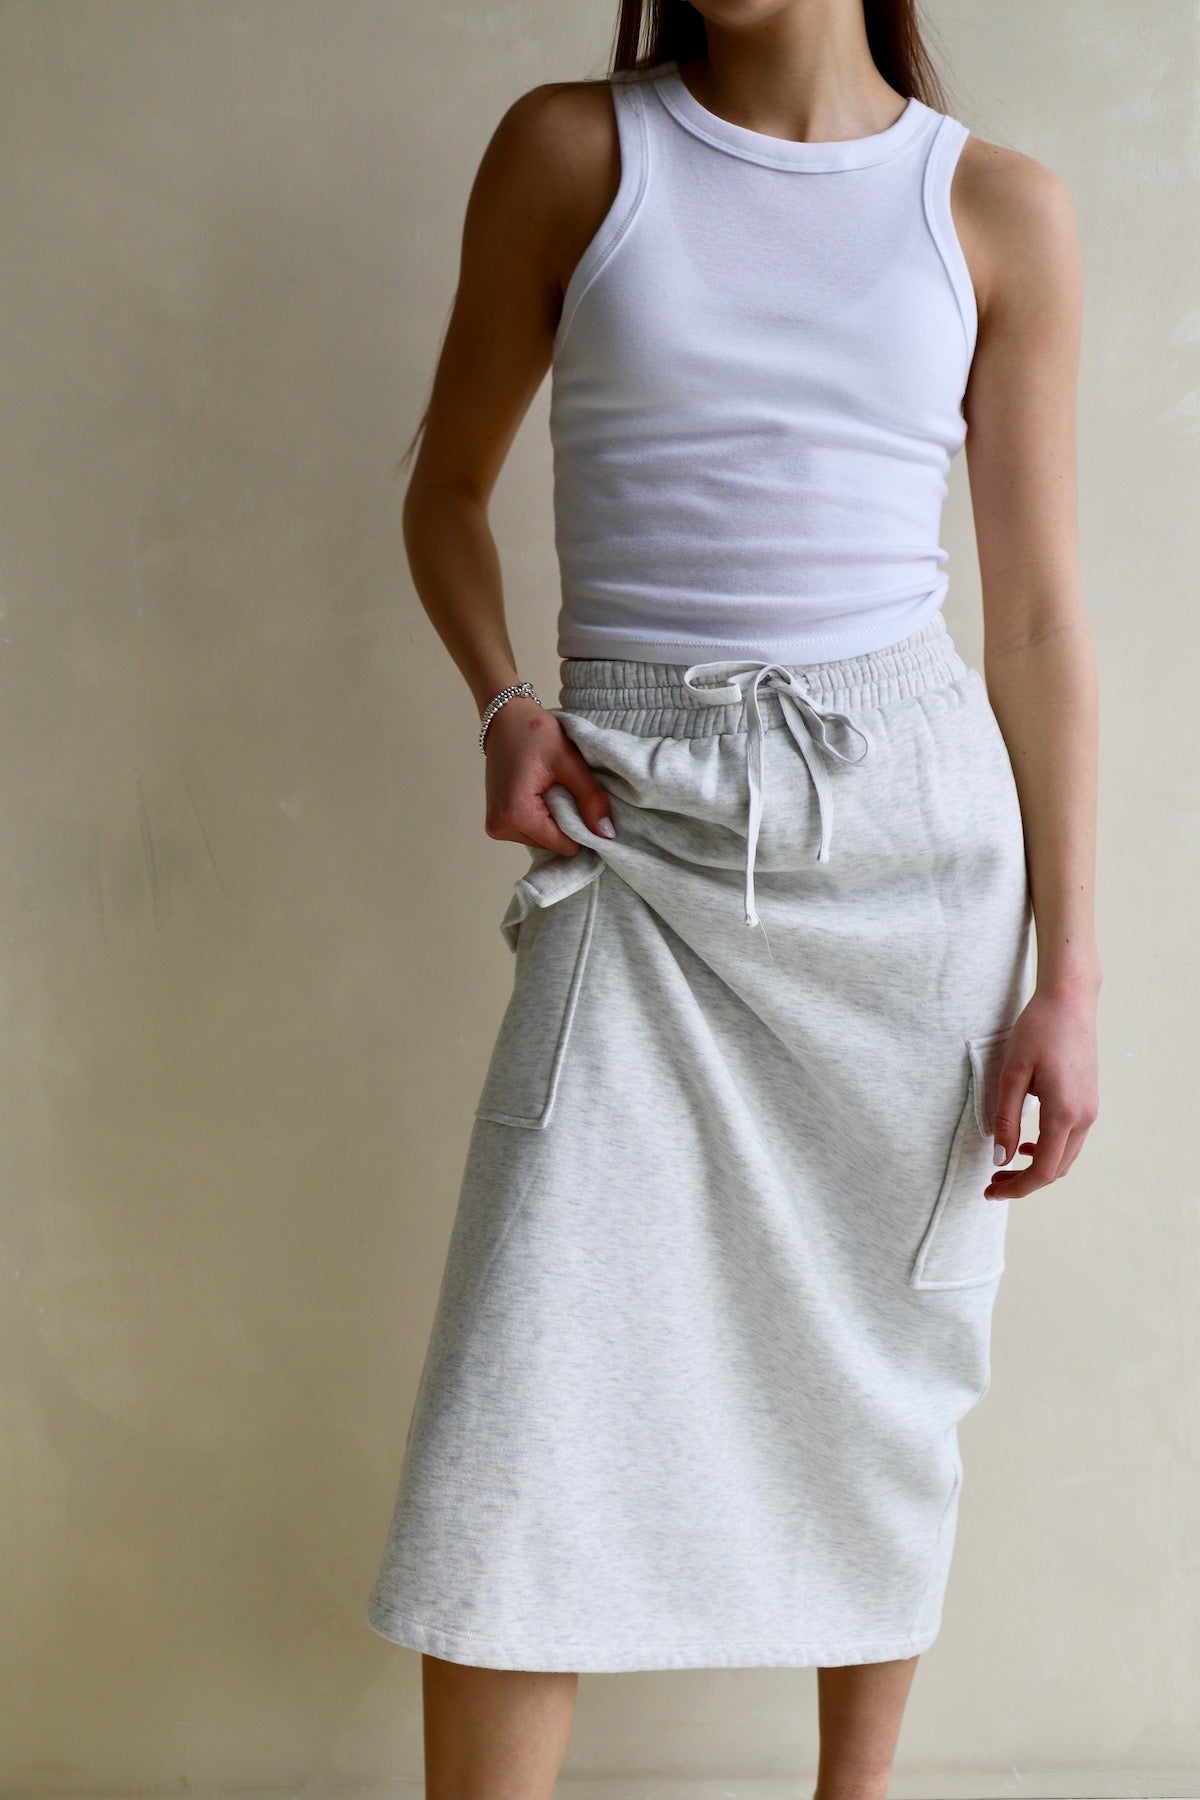 Details more than 136 fleece midi skirt super hot